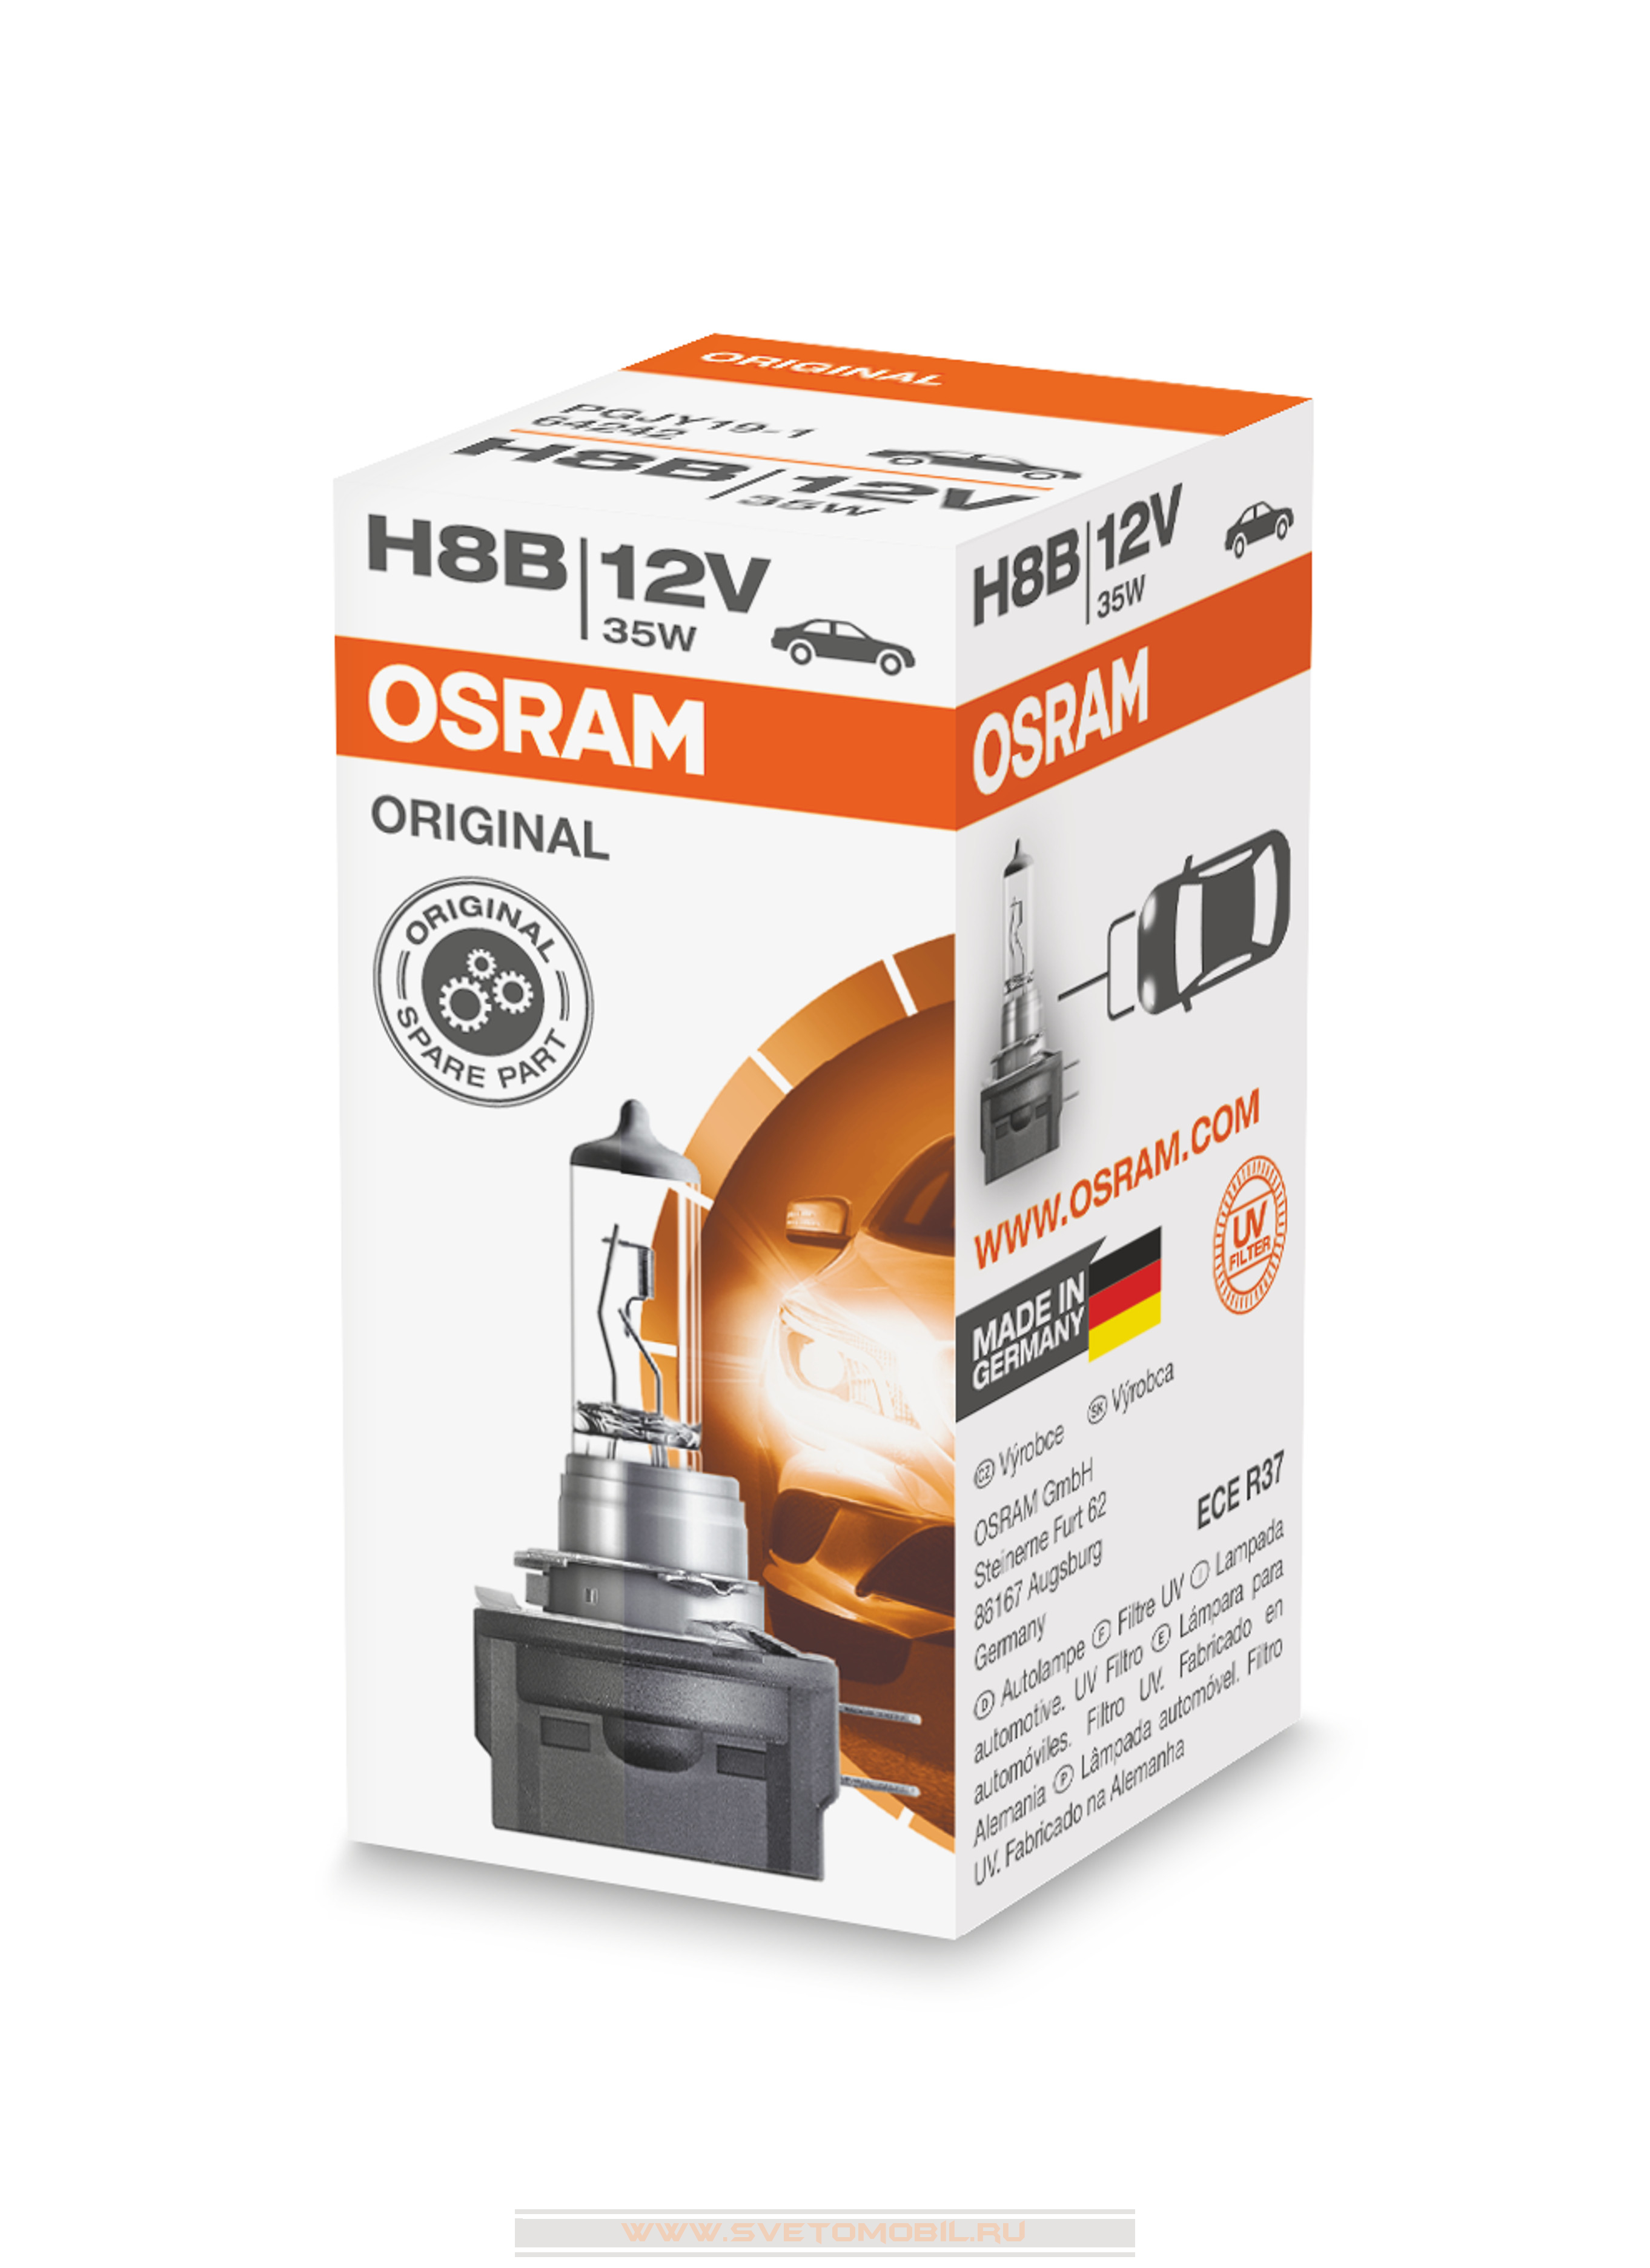 Osram Original H8B 12V/35w